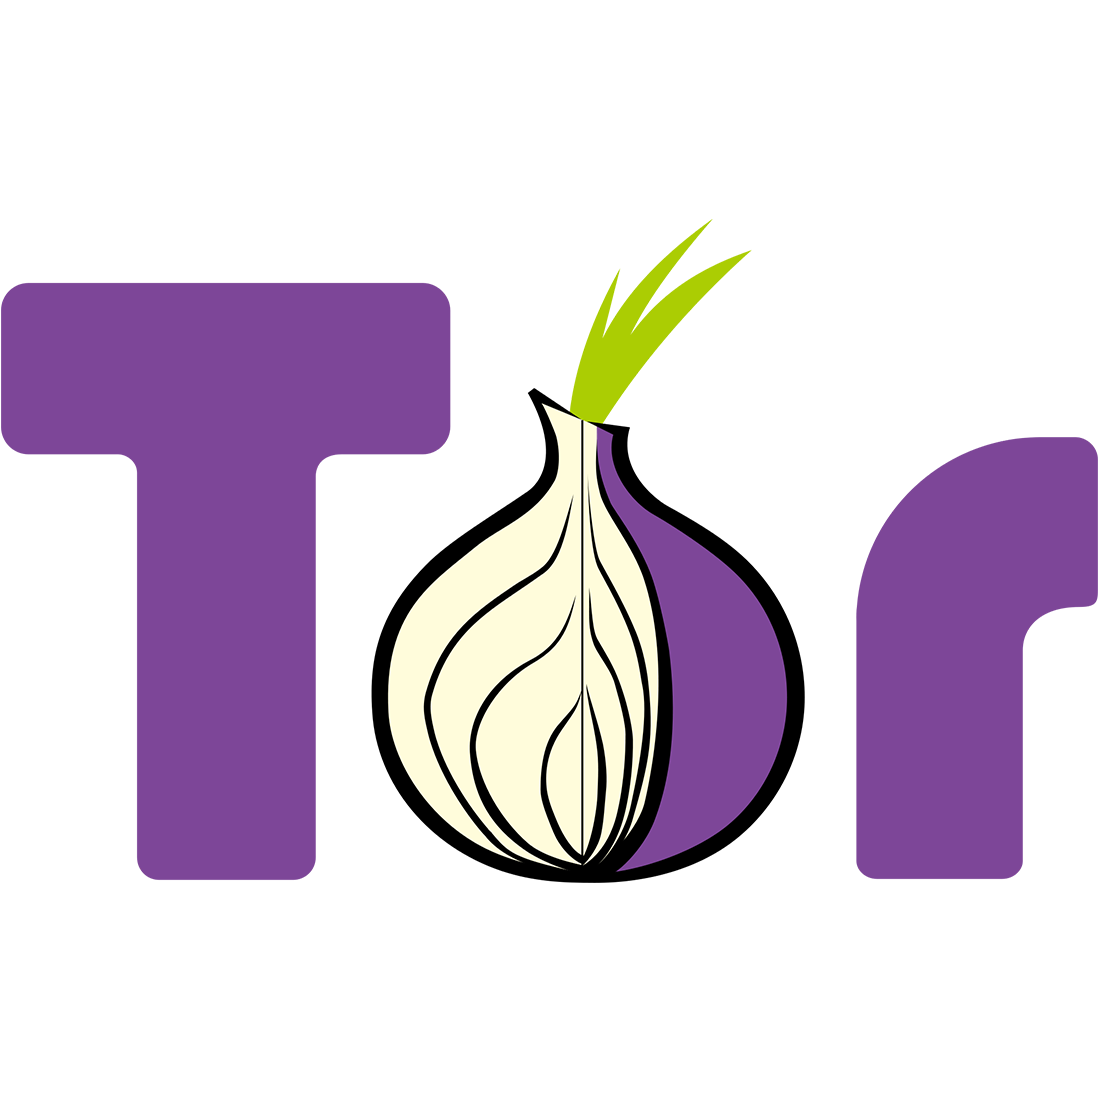 TOR, невидимый интернет, скрытый интернет, l2P, Torsearch.se, Tor2web, Torch, Grams, Hidden Wiki, DeepDotWeb, скрытая википедия, Поисковики для Tor: как заглянуть внутрь глубокого интернета?